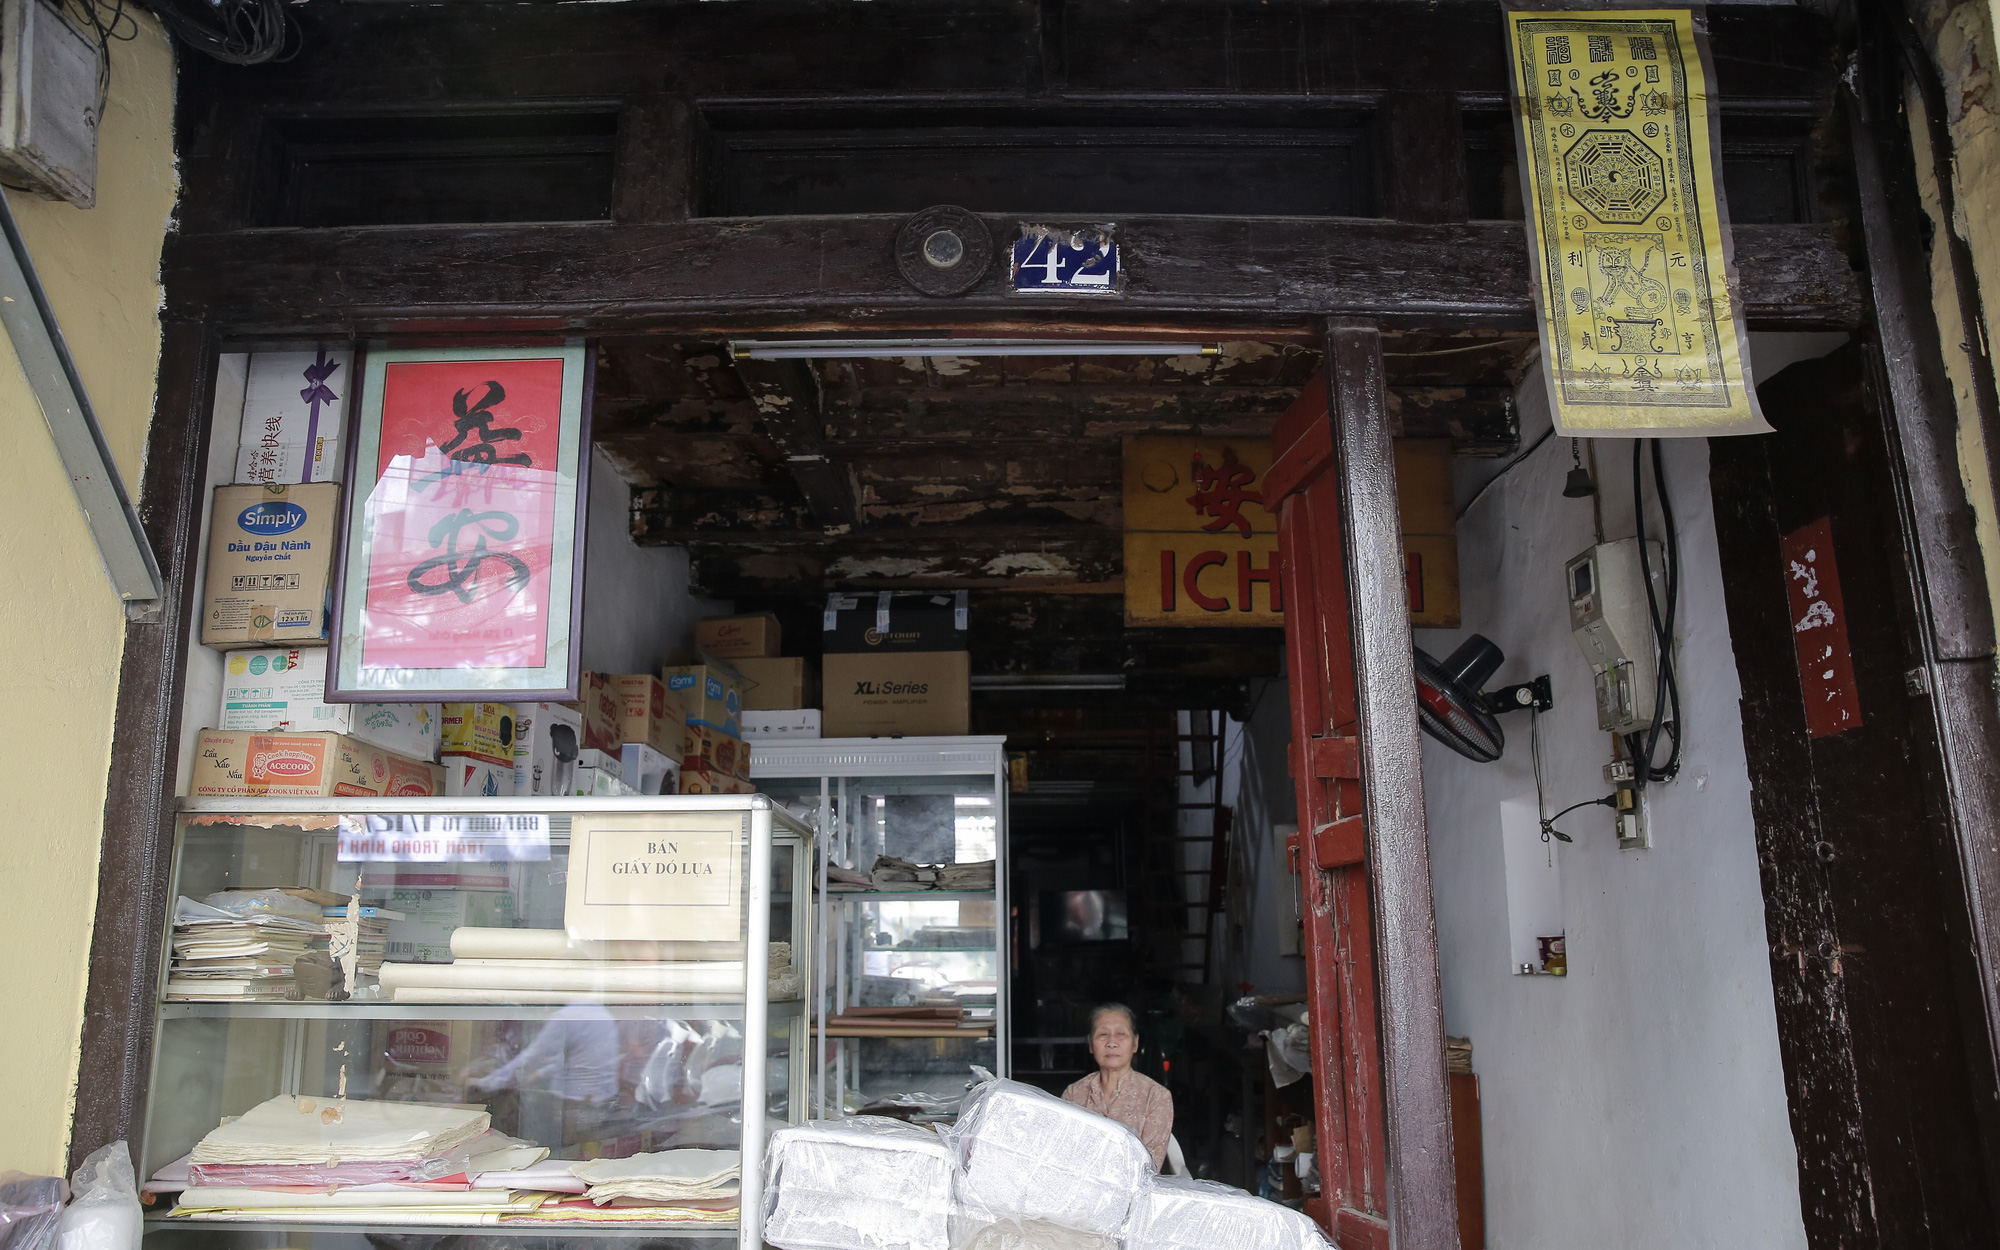 Căn nhà cổ hình “hộp diêm” hơn 130 năm tuổi độc nhất Hà Nội